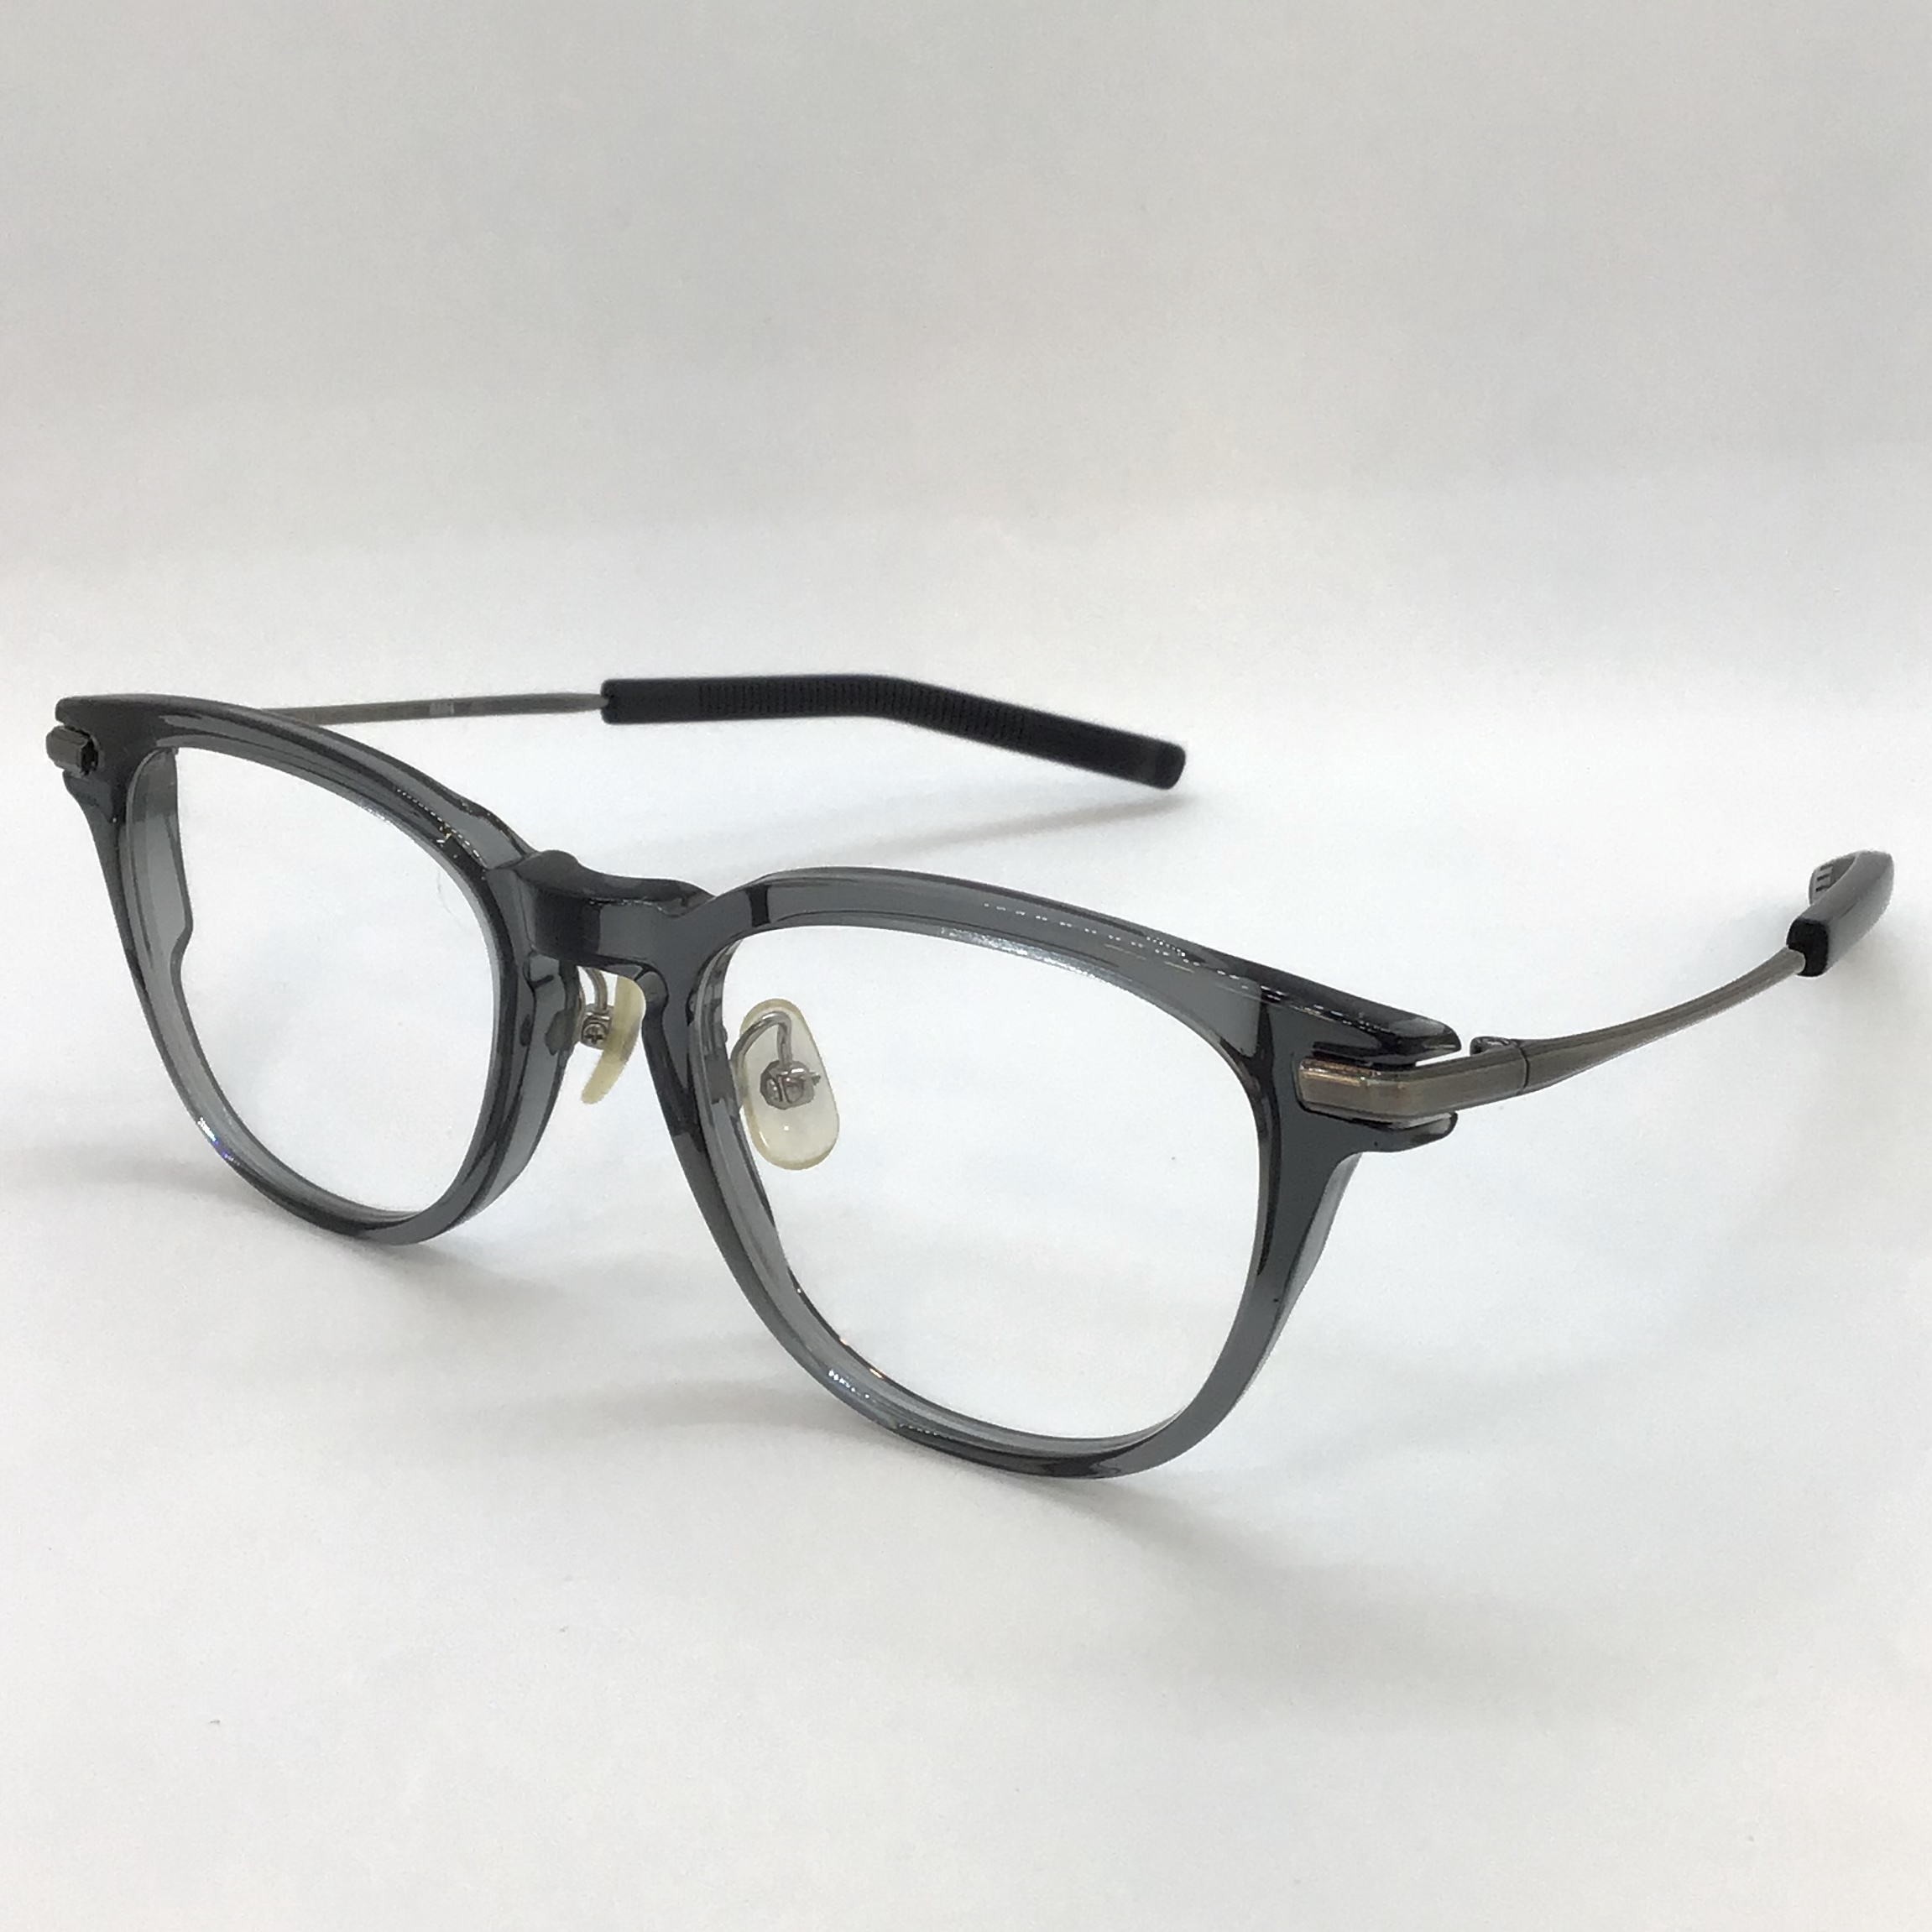 種類メガネフォーナインズ999.9 ダークネイビーNPM-16 サングラスめがね眼鏡メガネ